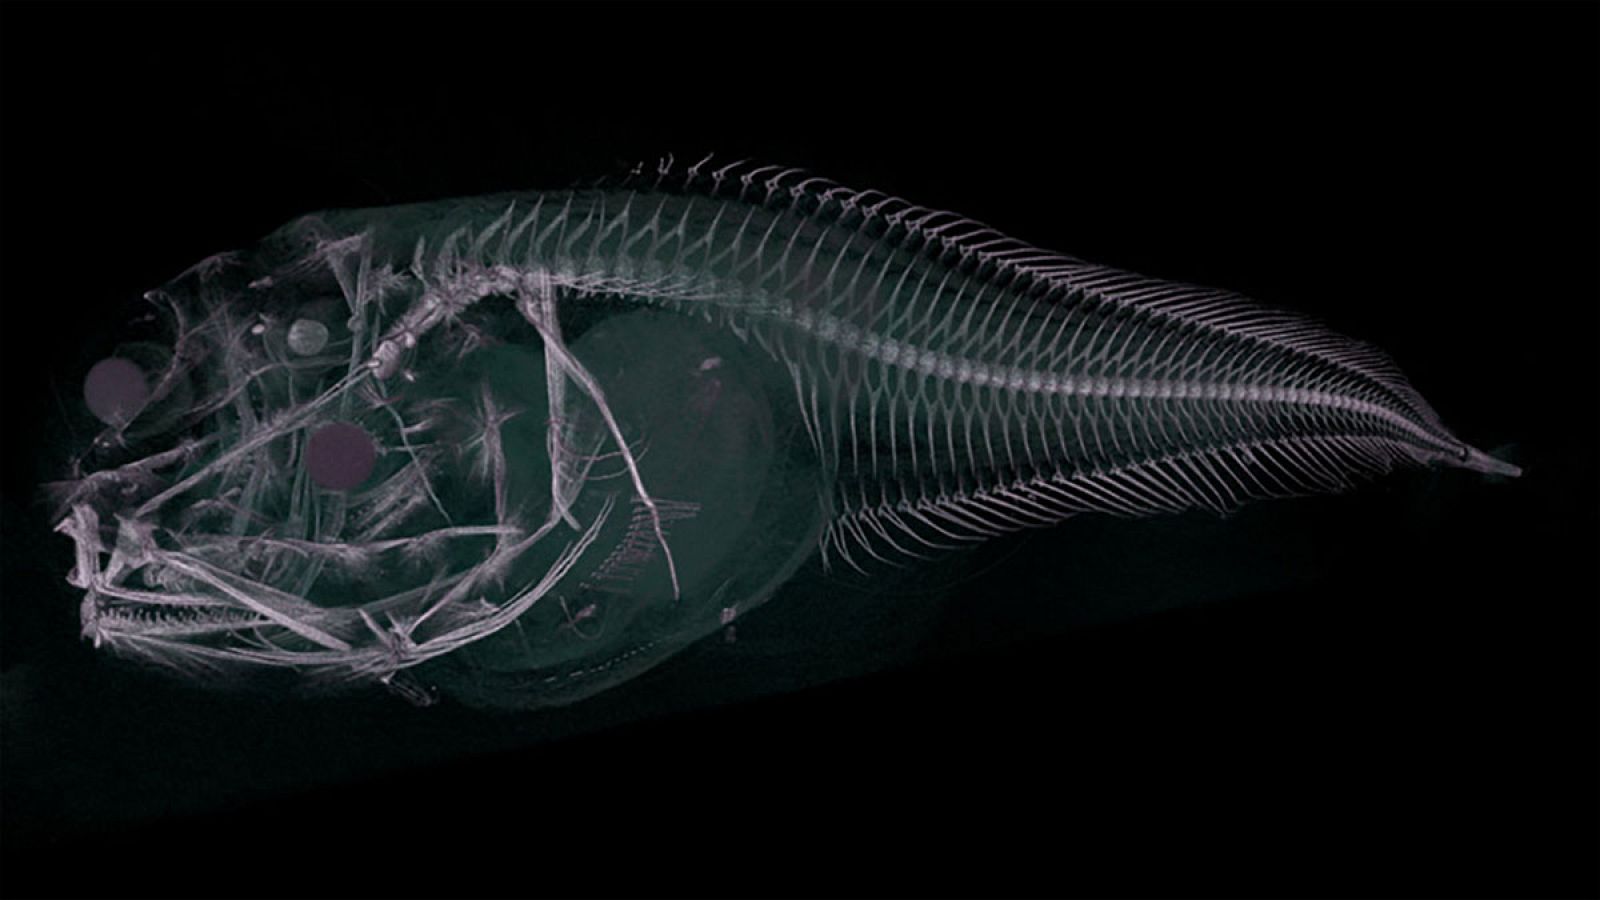 Tomografía axial computarizada de uno de los peces babosos hallados.